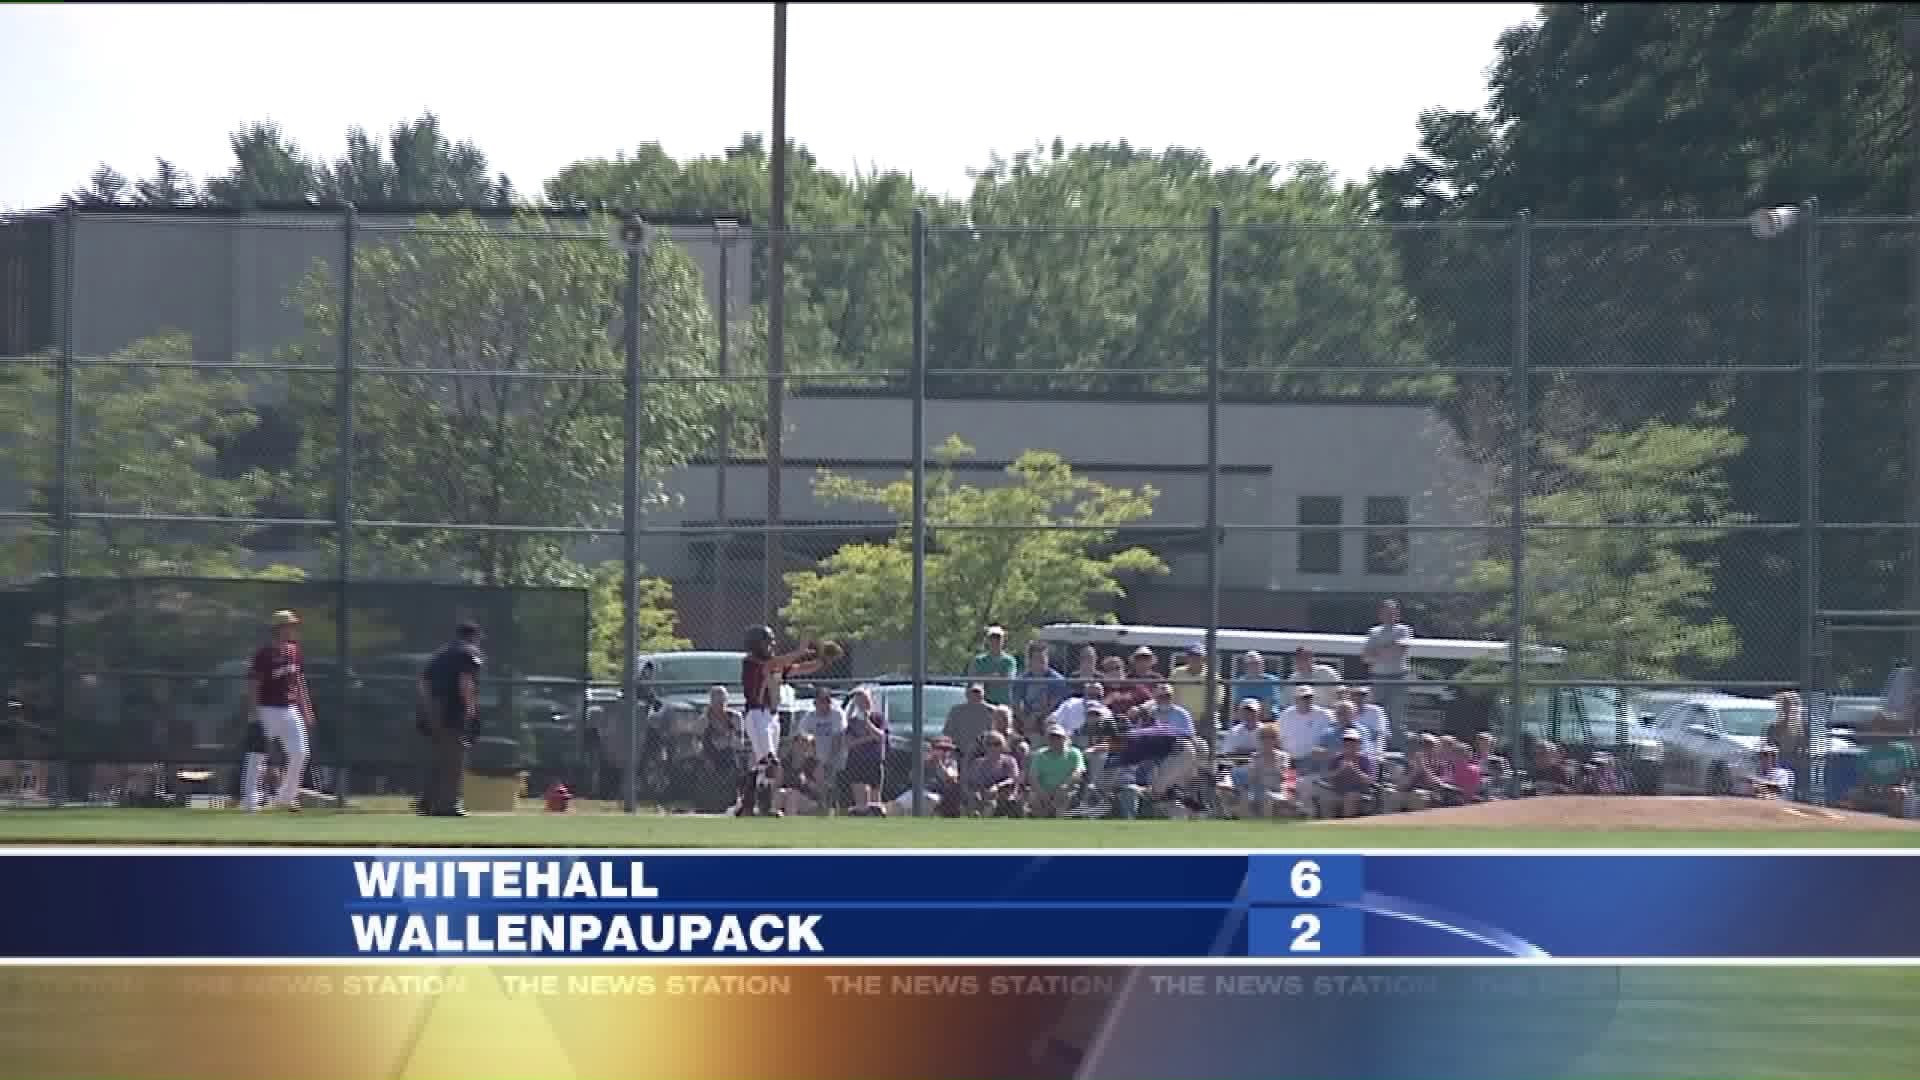 Whitehall vs Wallenpaupack baseball